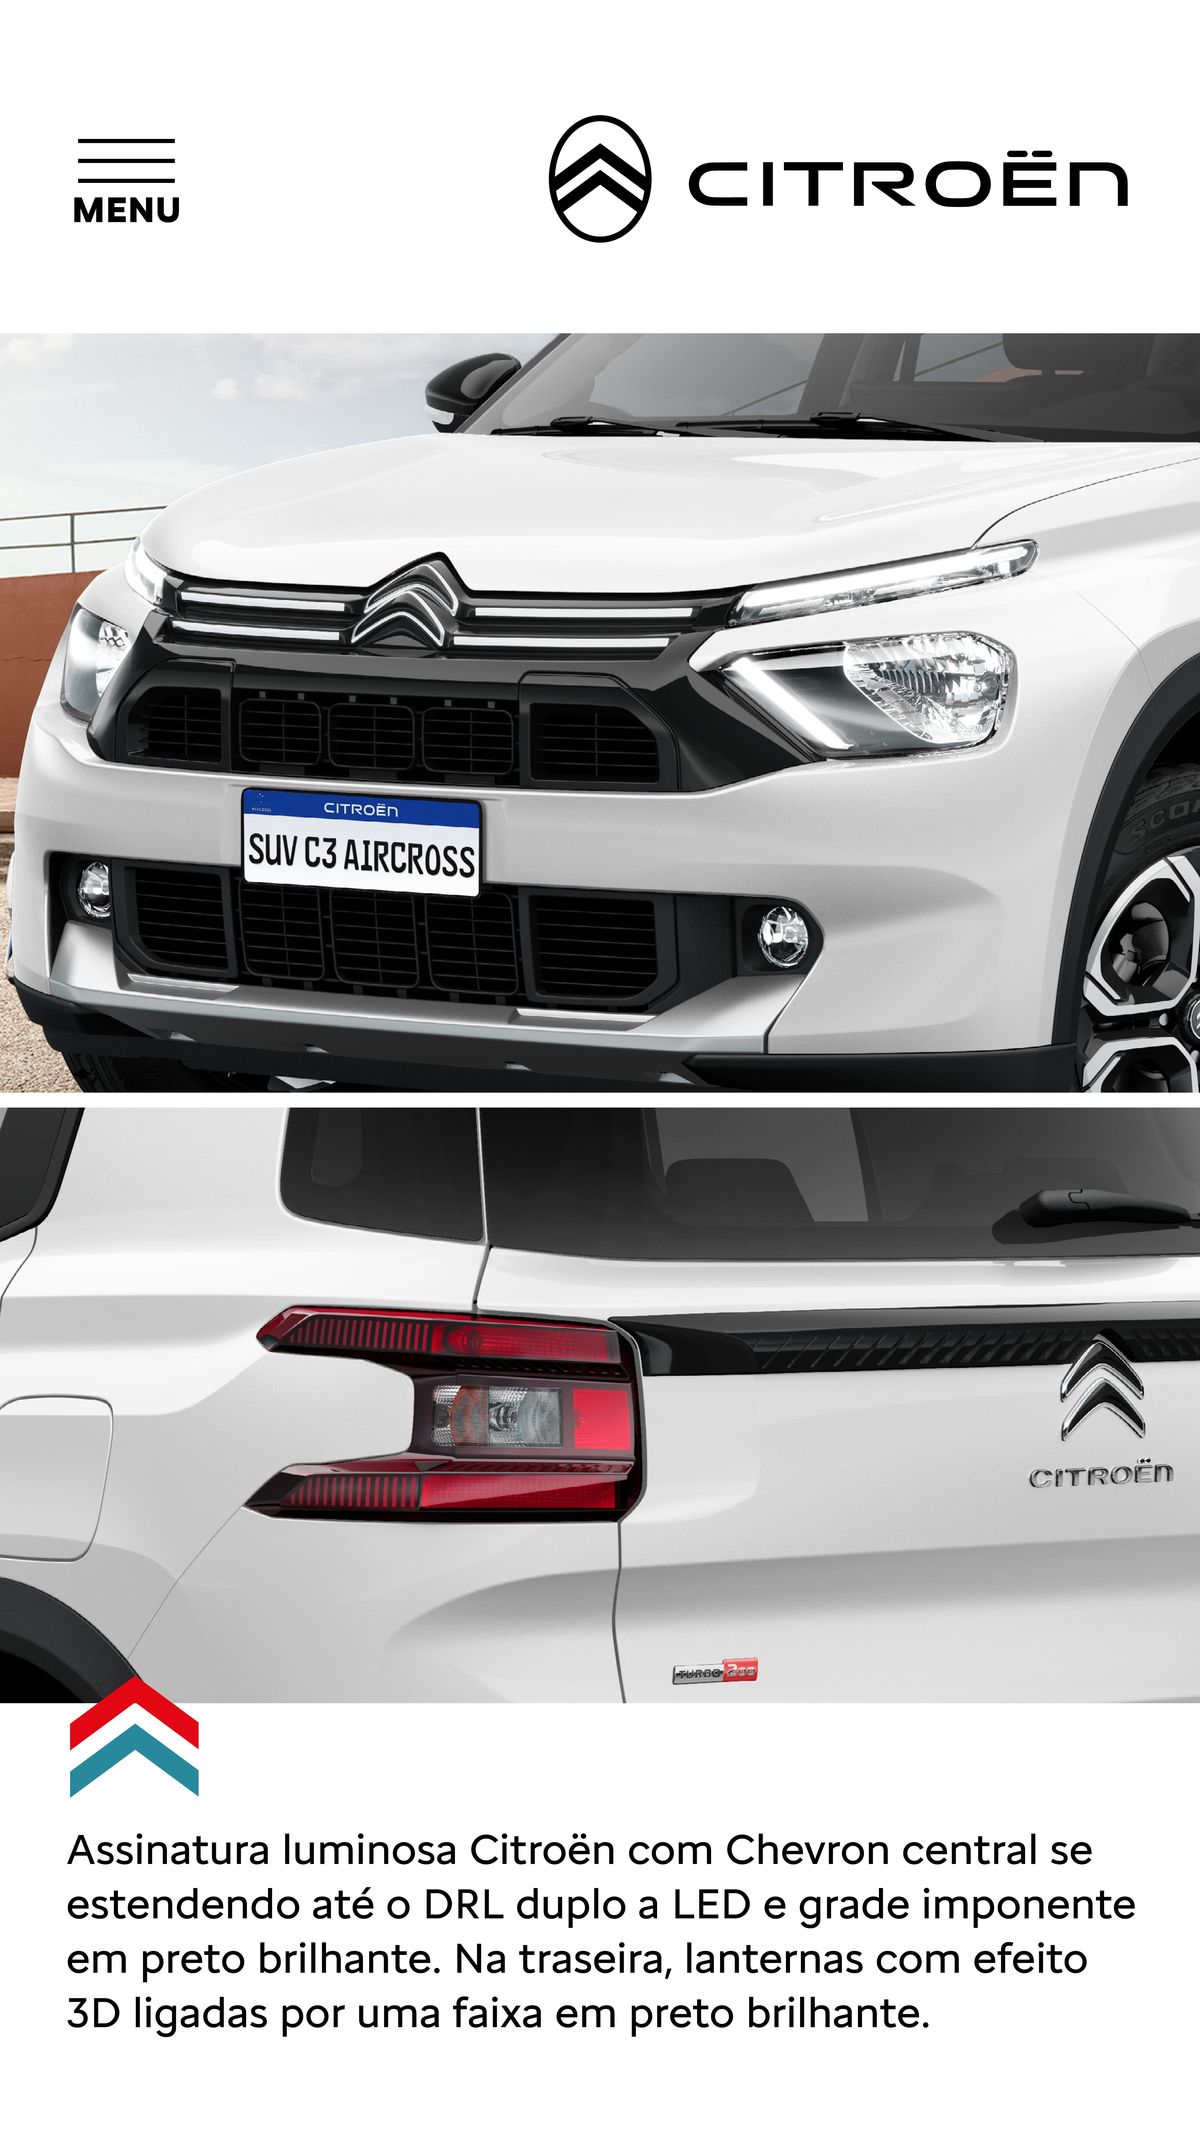 Desconto especial em modelos Citroën com assinatura luminosa exclusiva